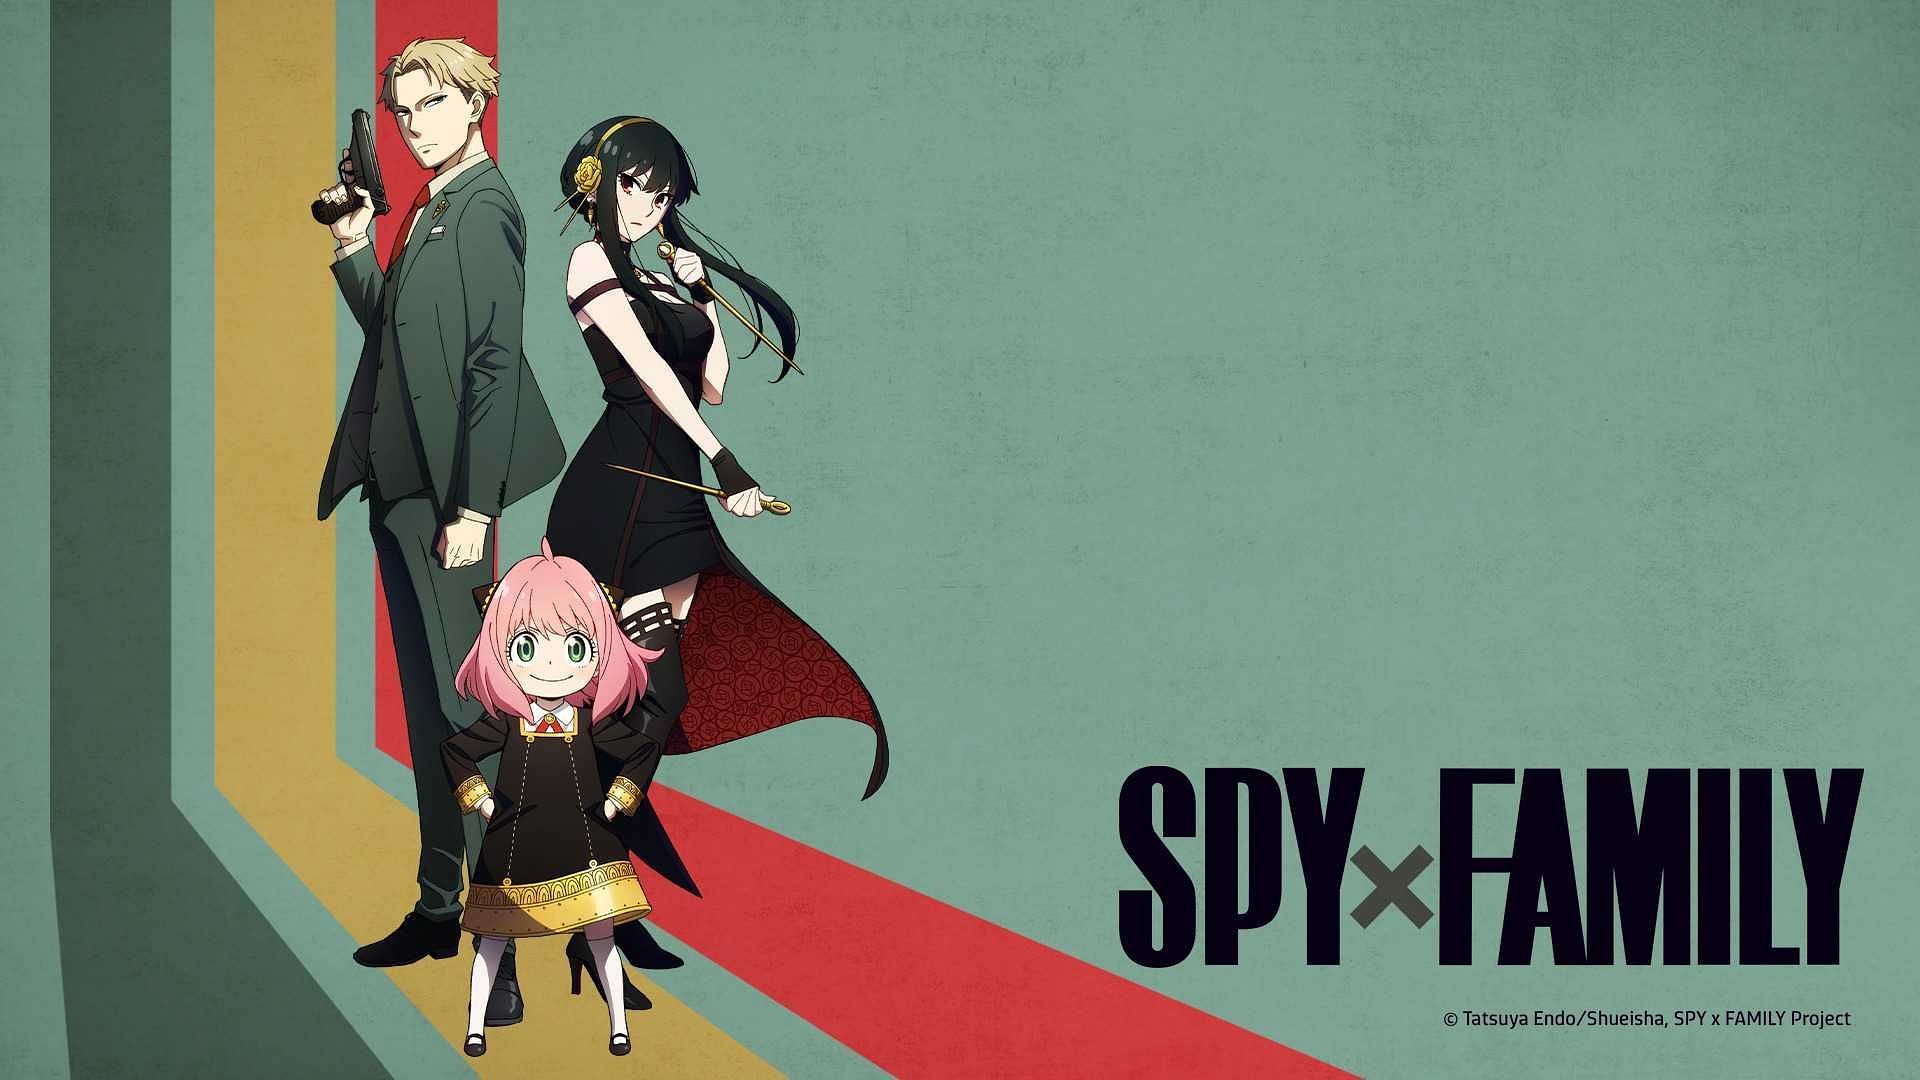 Spy x family (image via WIT STUDIO, Cloverworks)